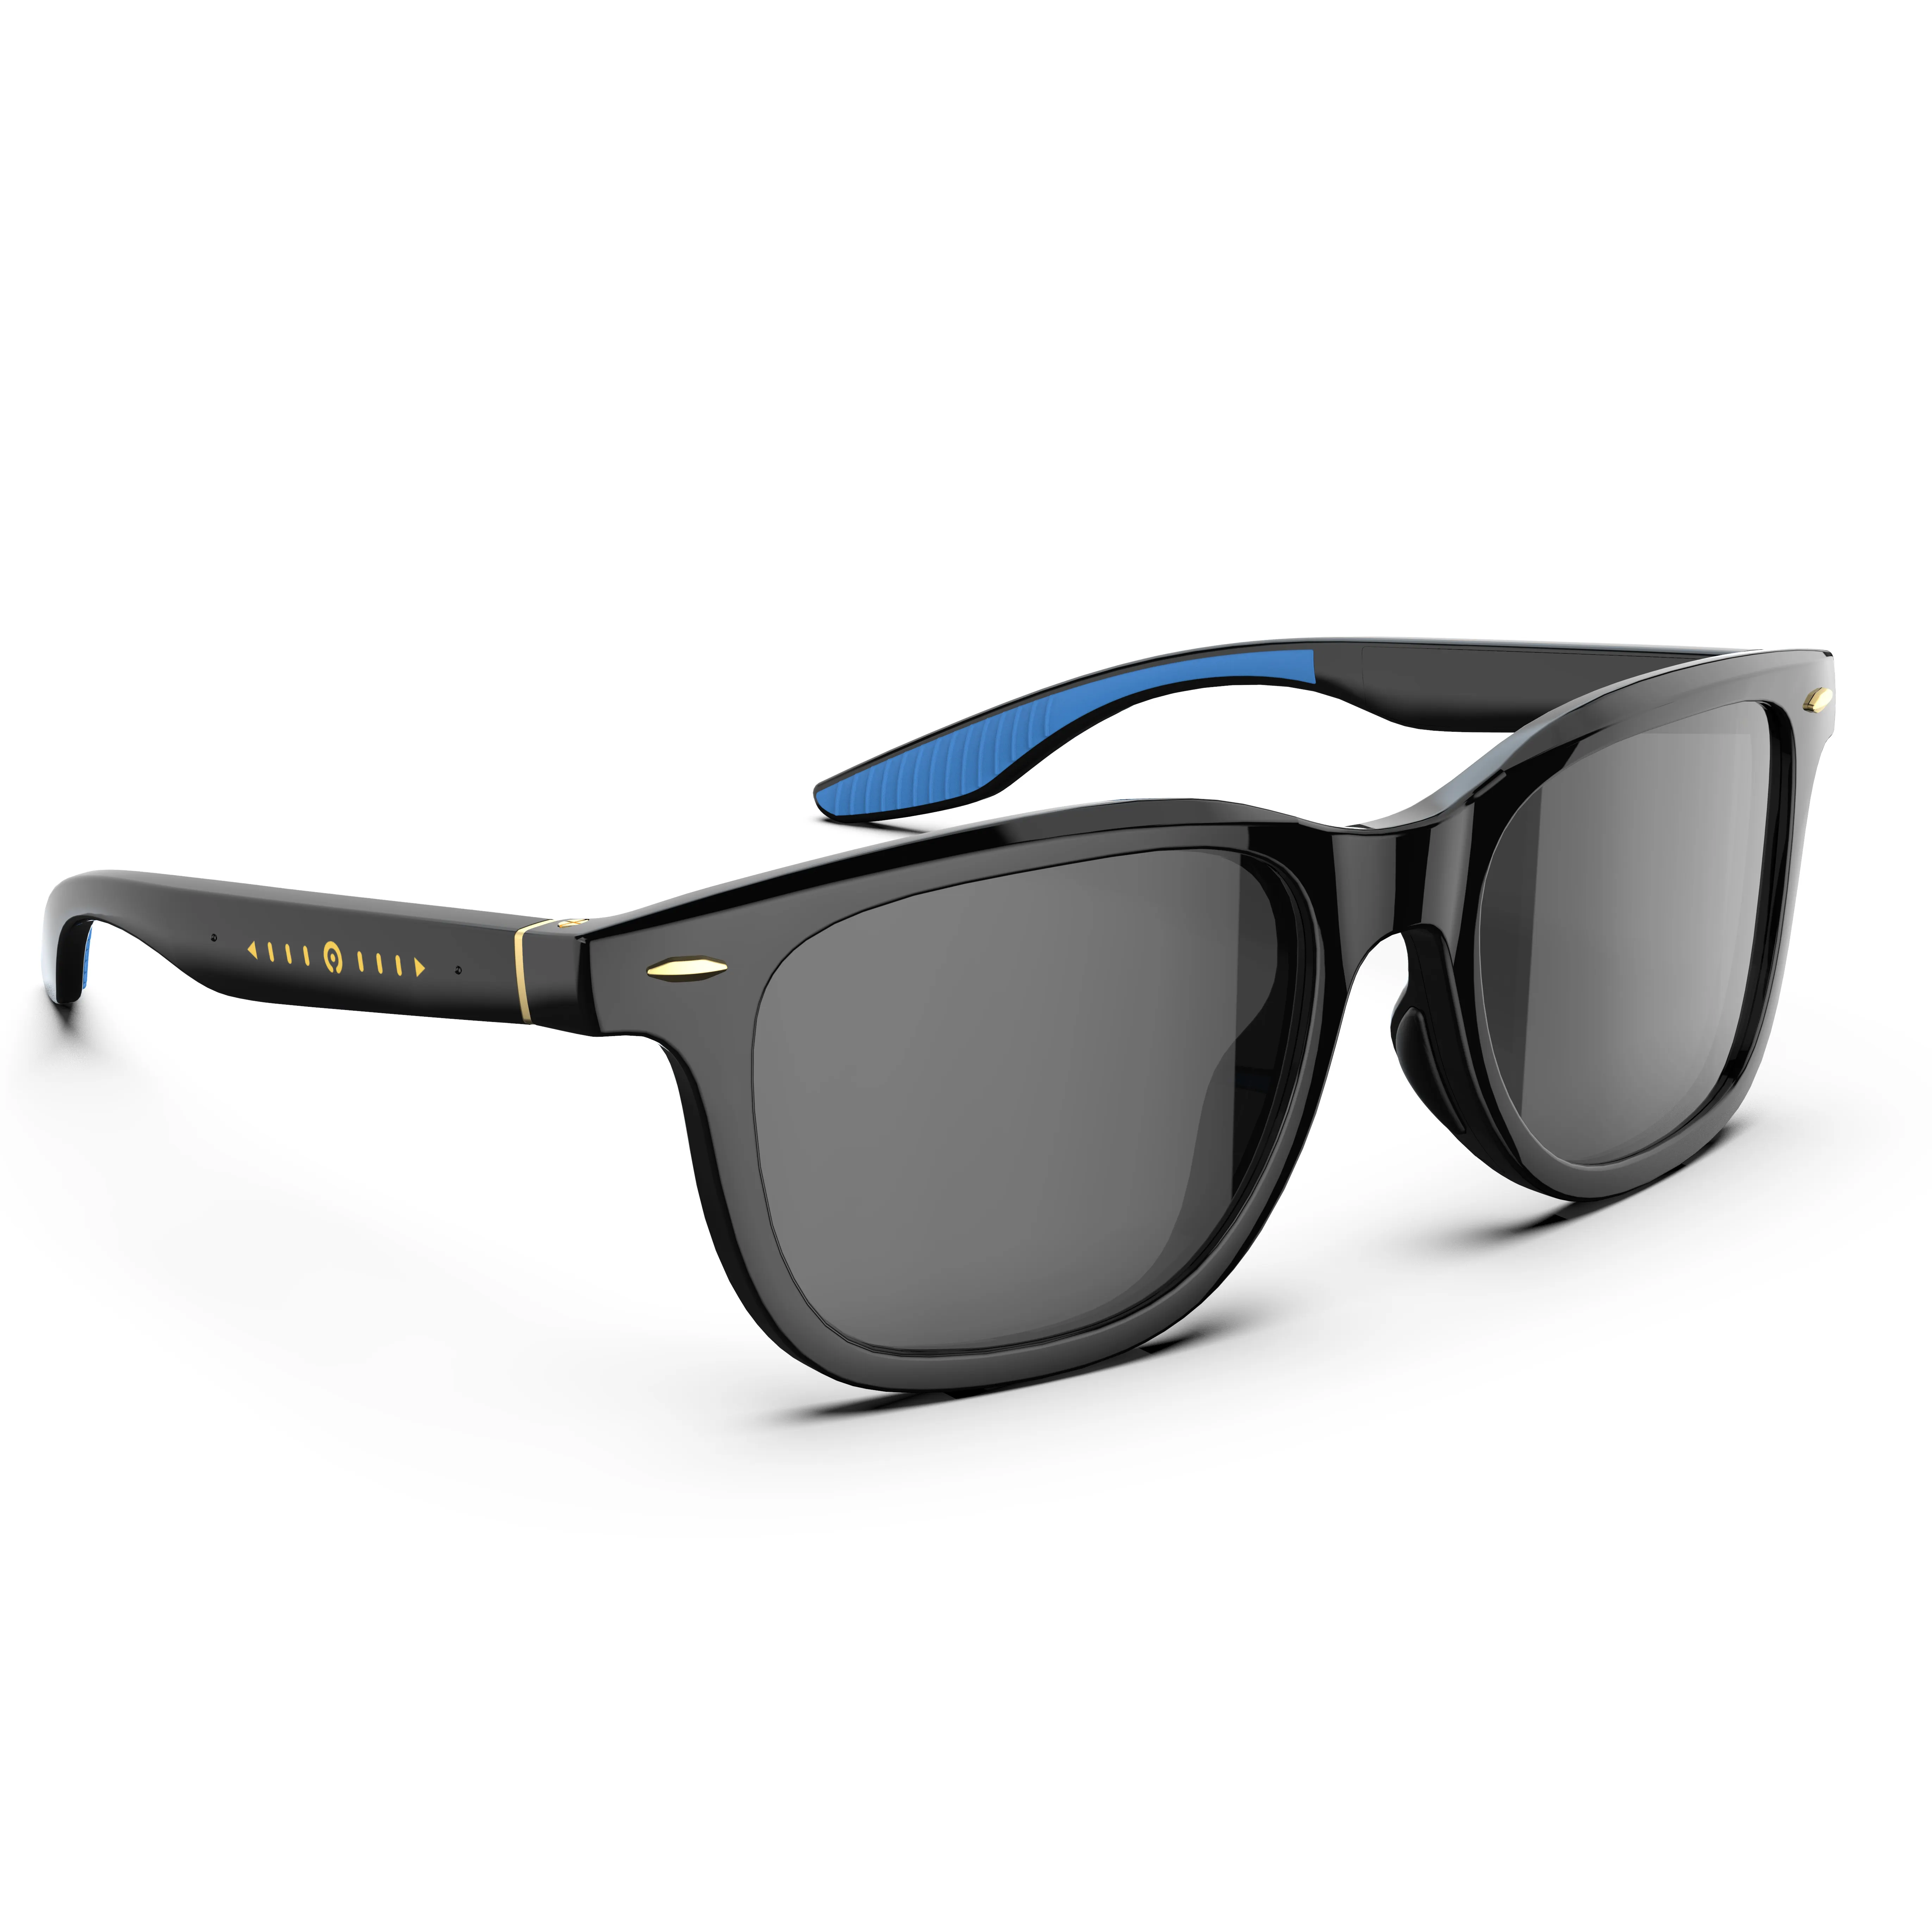 Gafas de sol polarizadas fotocromáticas inteligentes, lentes de sol con lentes LCD de VR, deslizantes, nueva tecnología 0,1 s